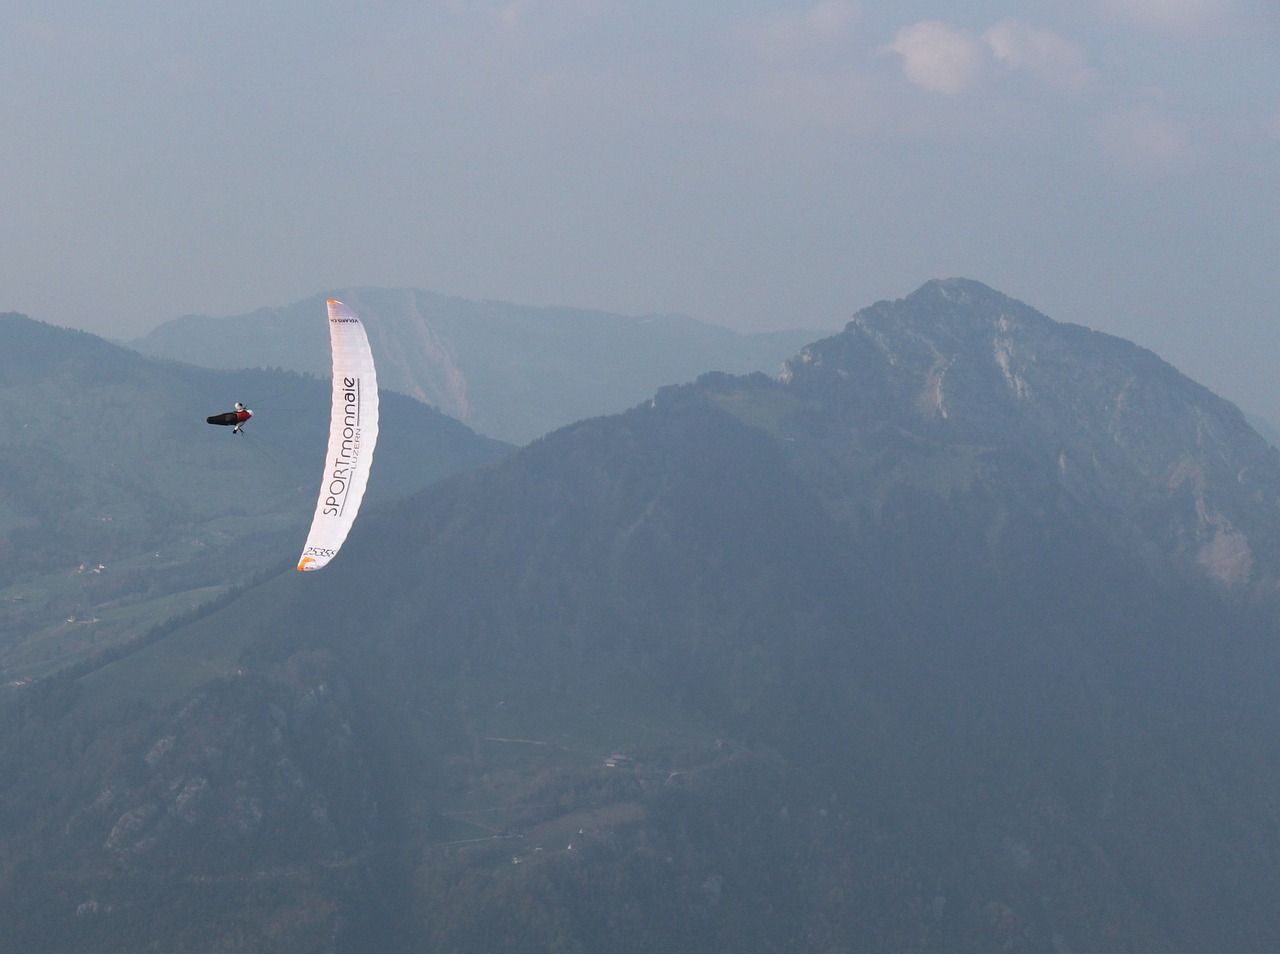 volaris paragliding central switzerland switzerland free photo